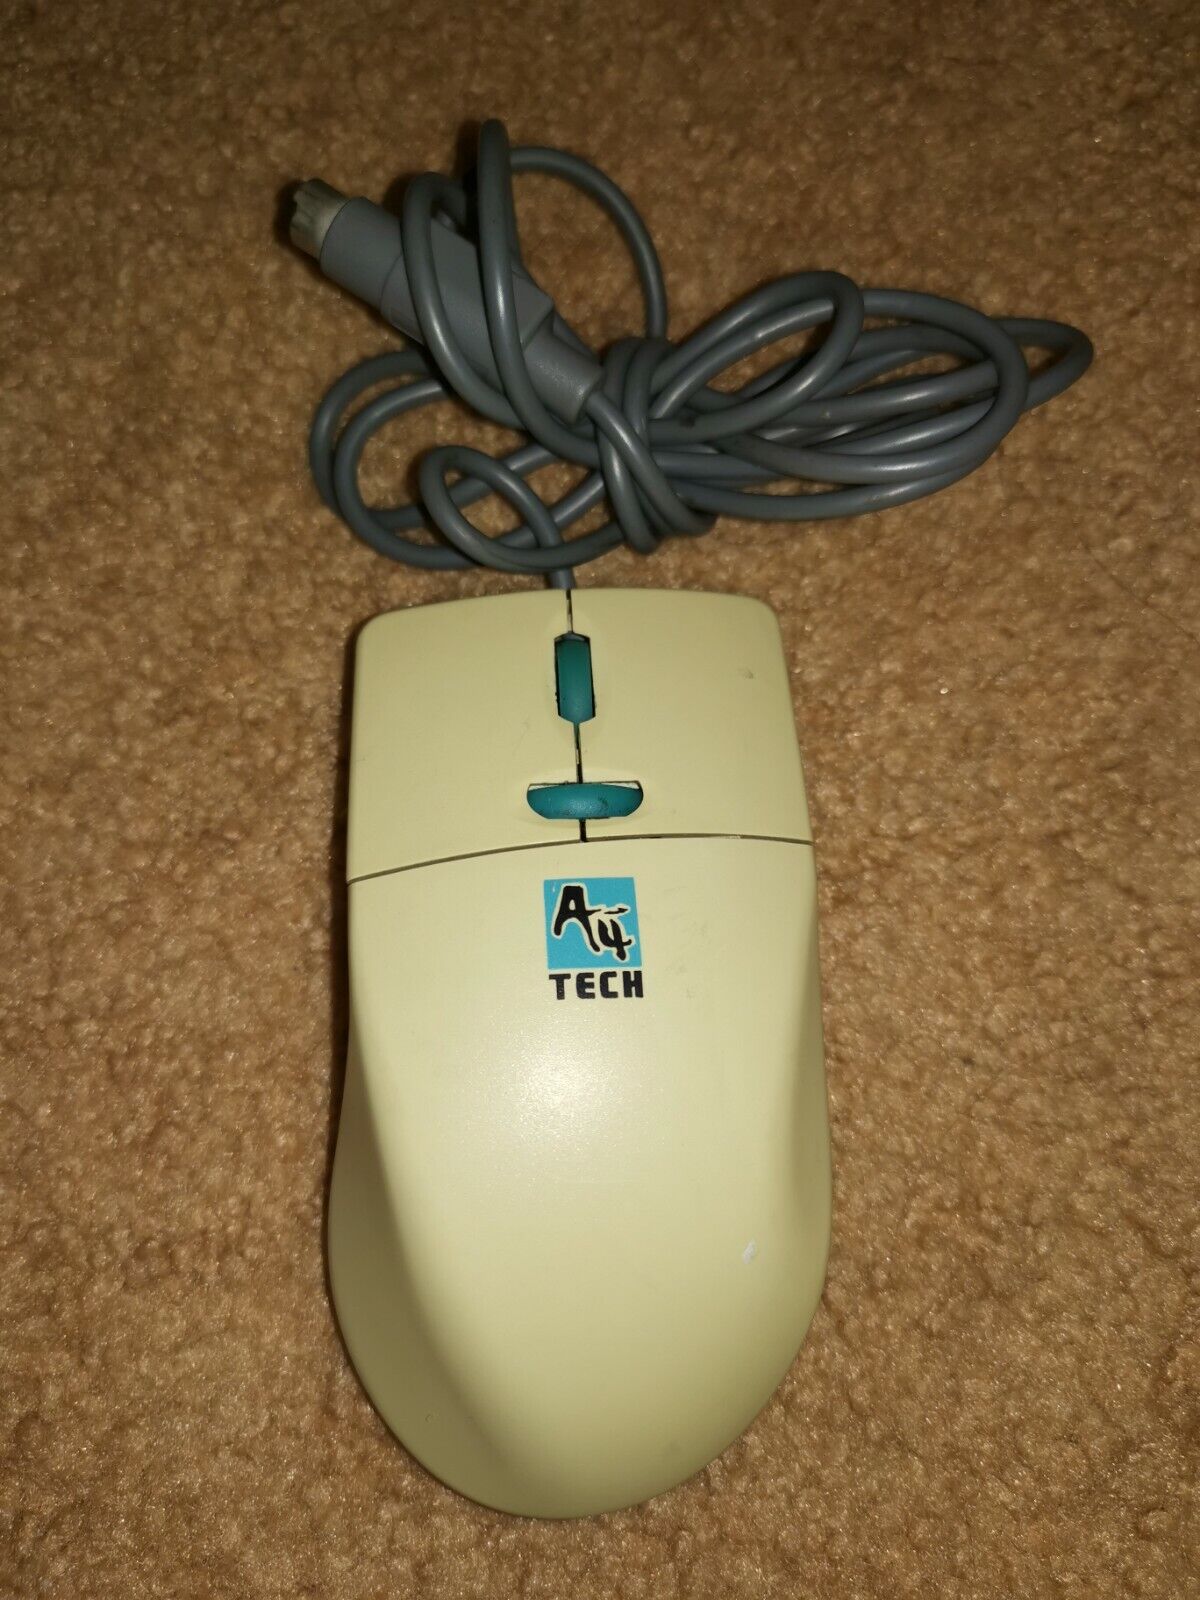 Retro A4 Tech 3 Button Rollerball PS/2 PC Computer Mouse.